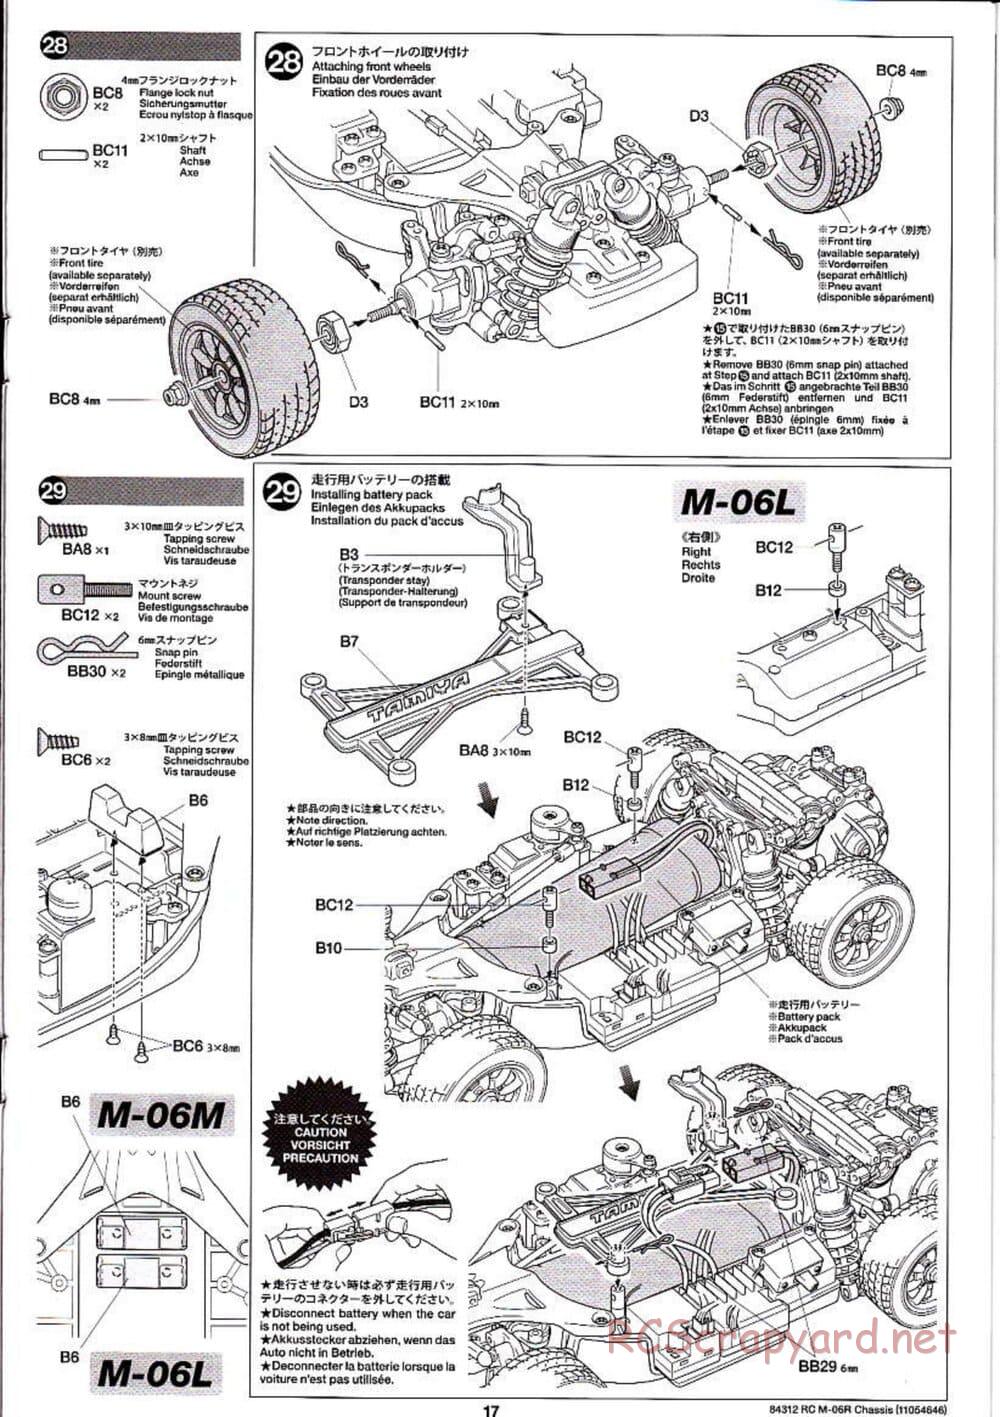 Tamiya - M-06R Chassis - Manual - Page 17